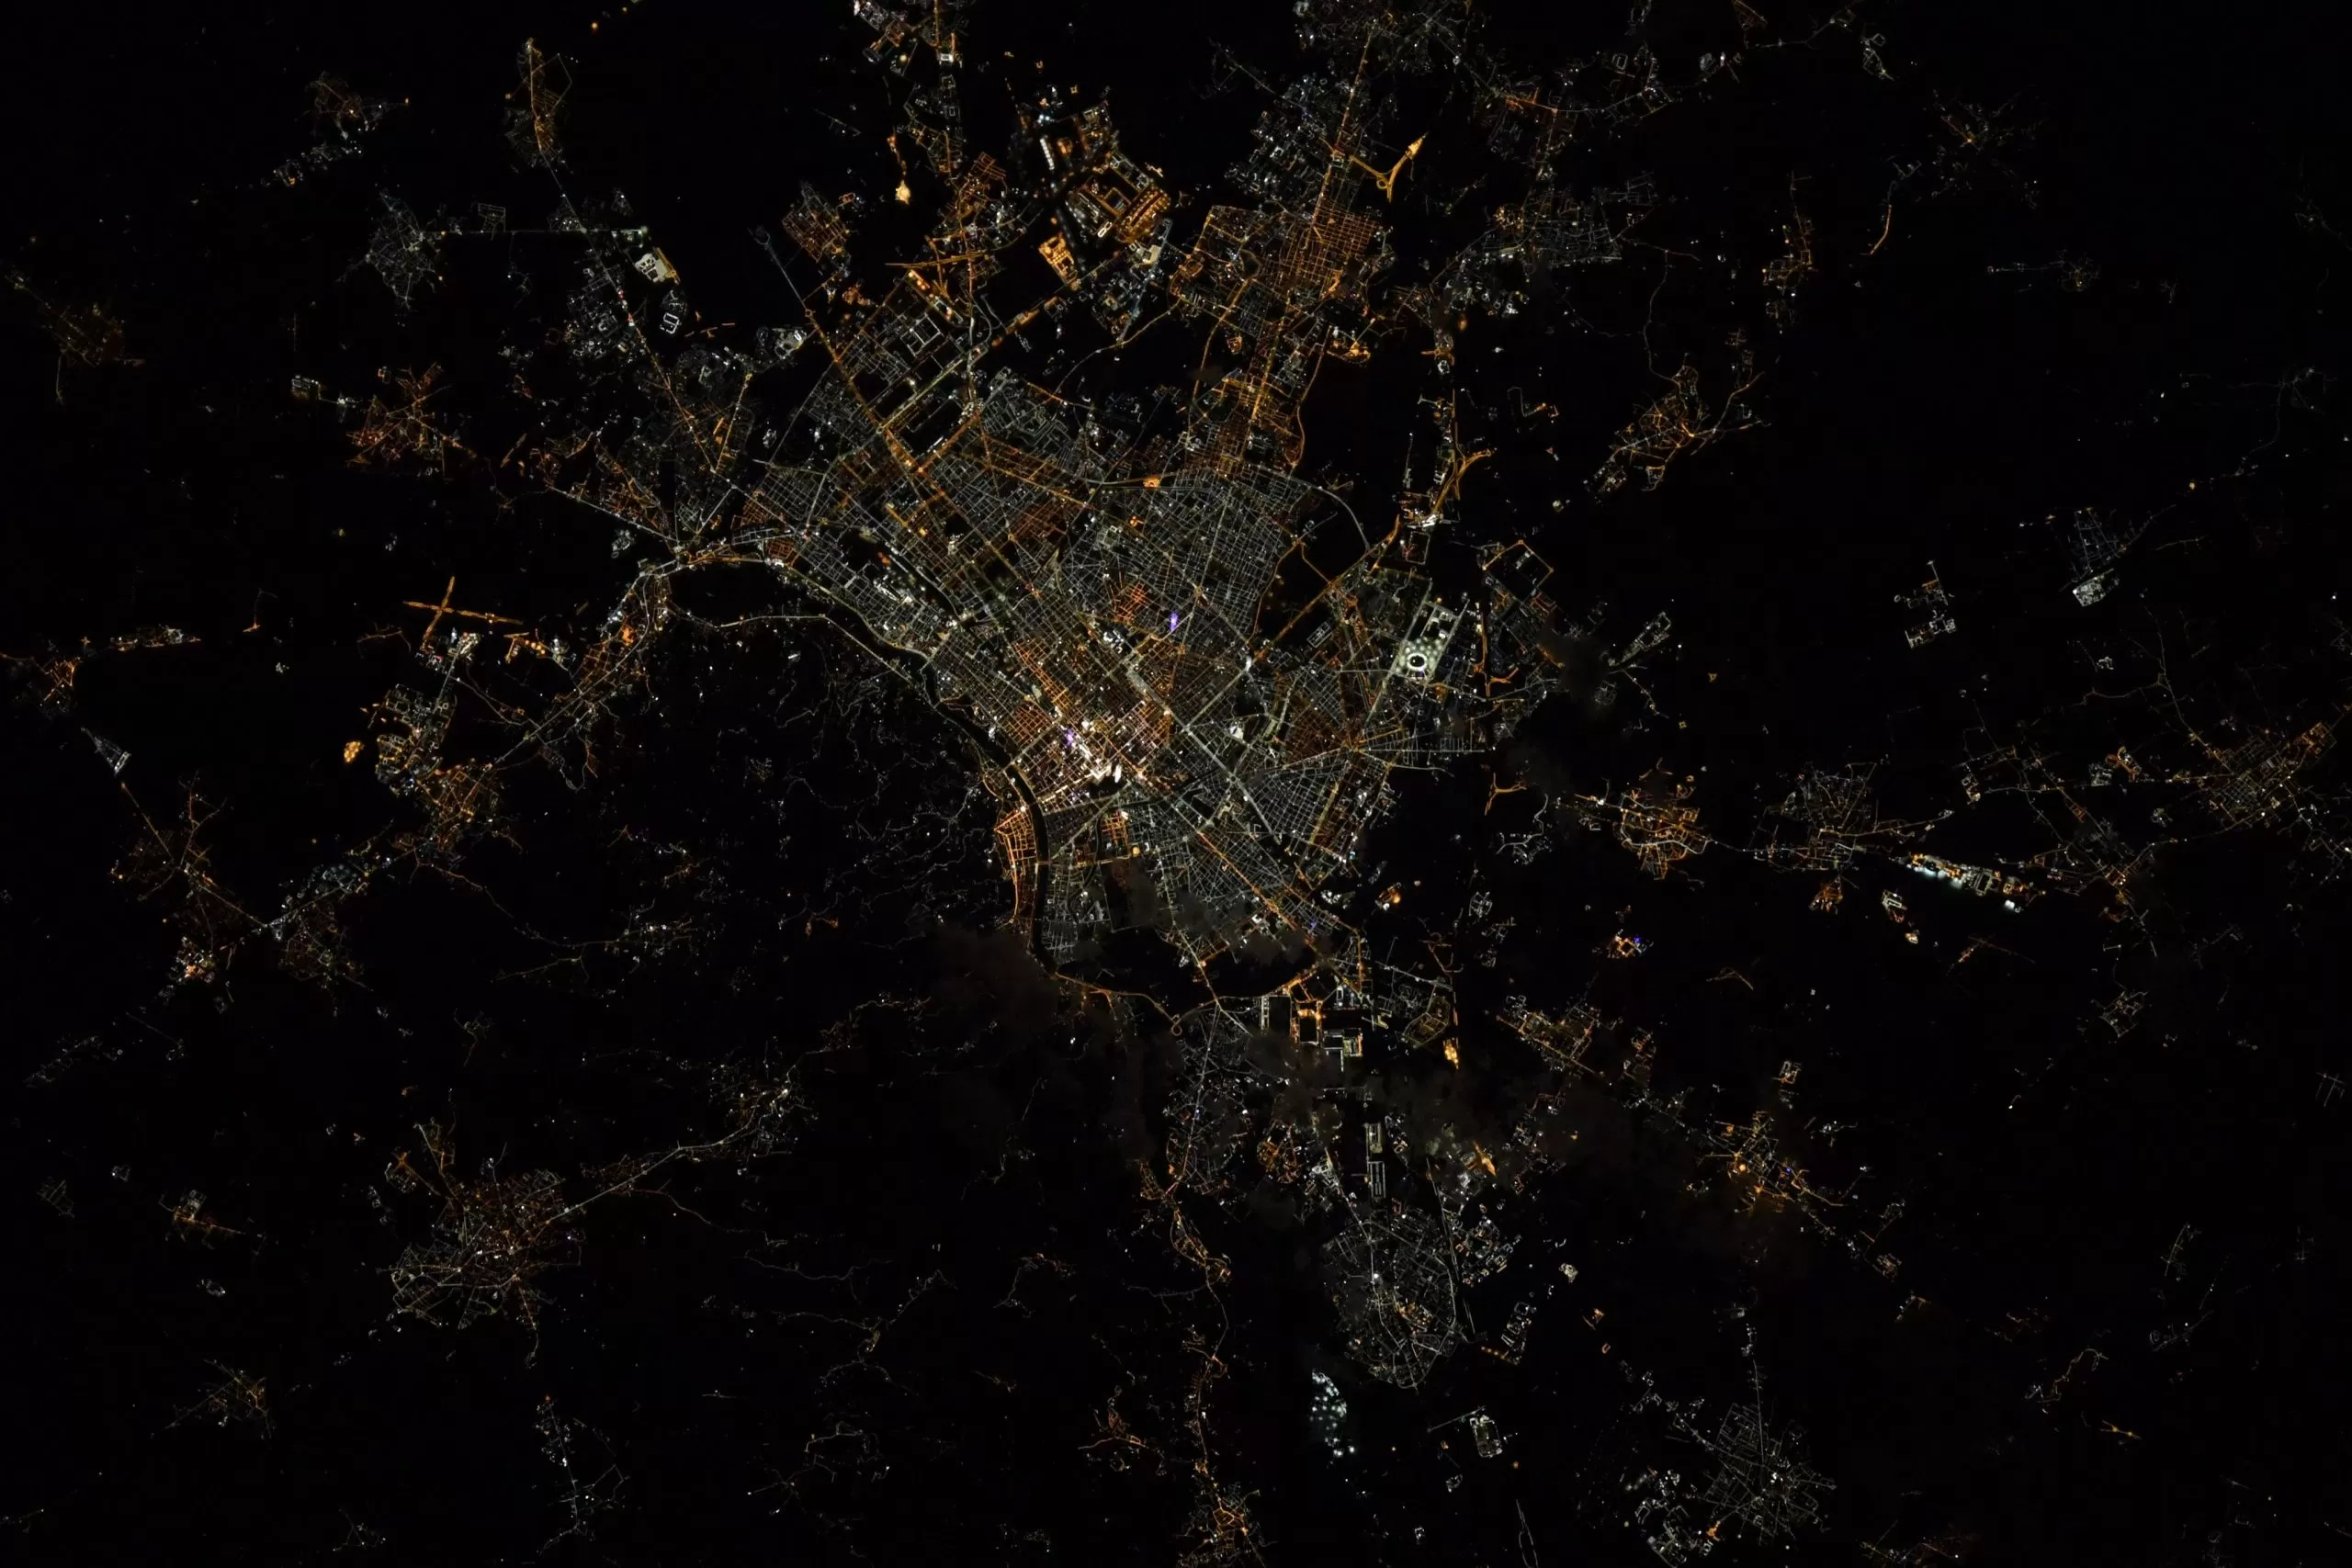 Torino fotografata dallo spazio: lo scatto dell'astronauta Shane Kimbrough toglie il fiato